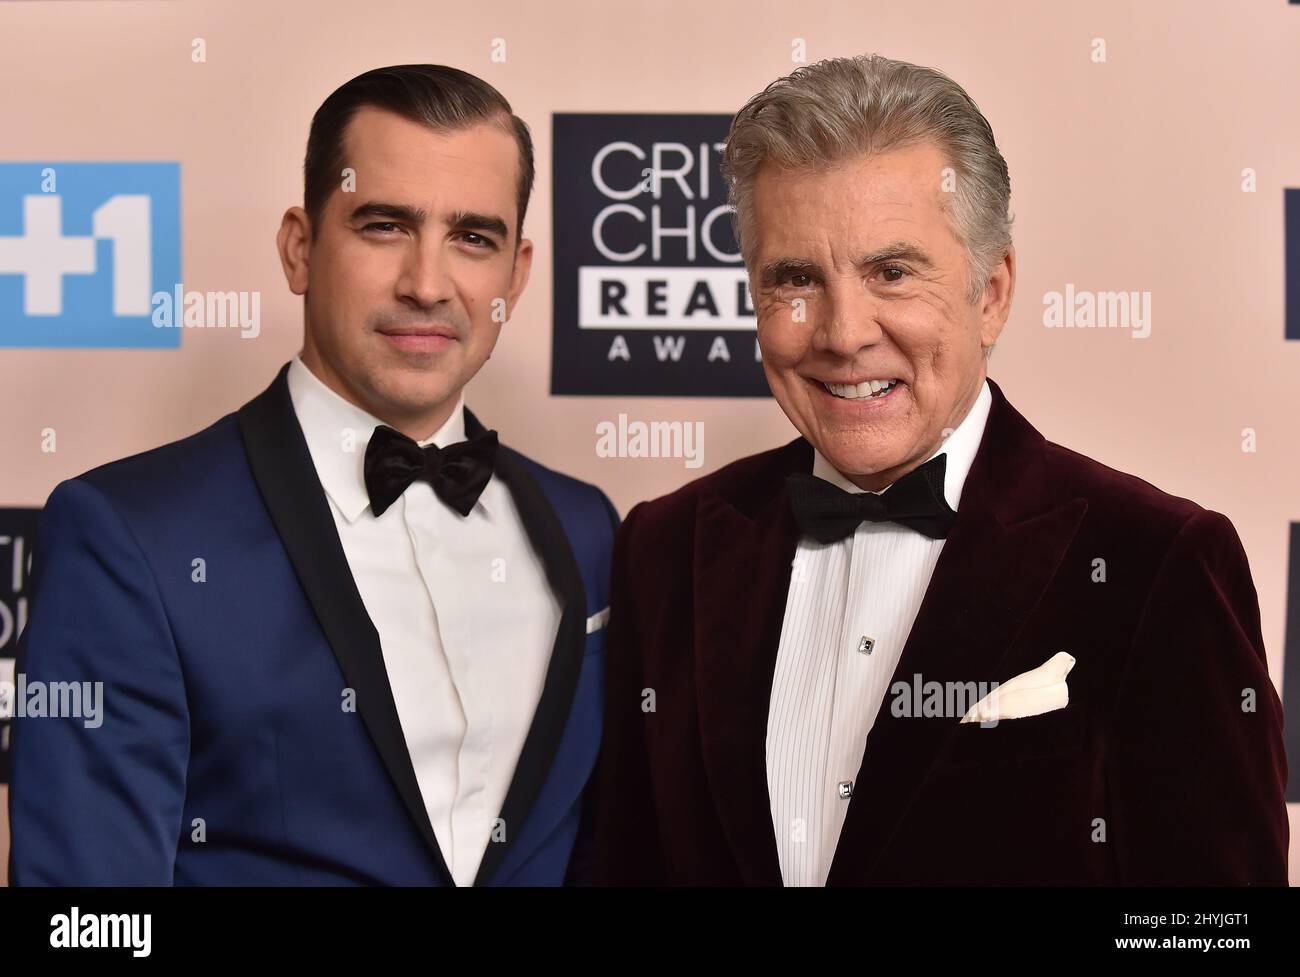 Callahan Walsh and John Walsh at the Critics' Choice Real TV Awards held at the Beverly Hilton Hotel Stock Photo